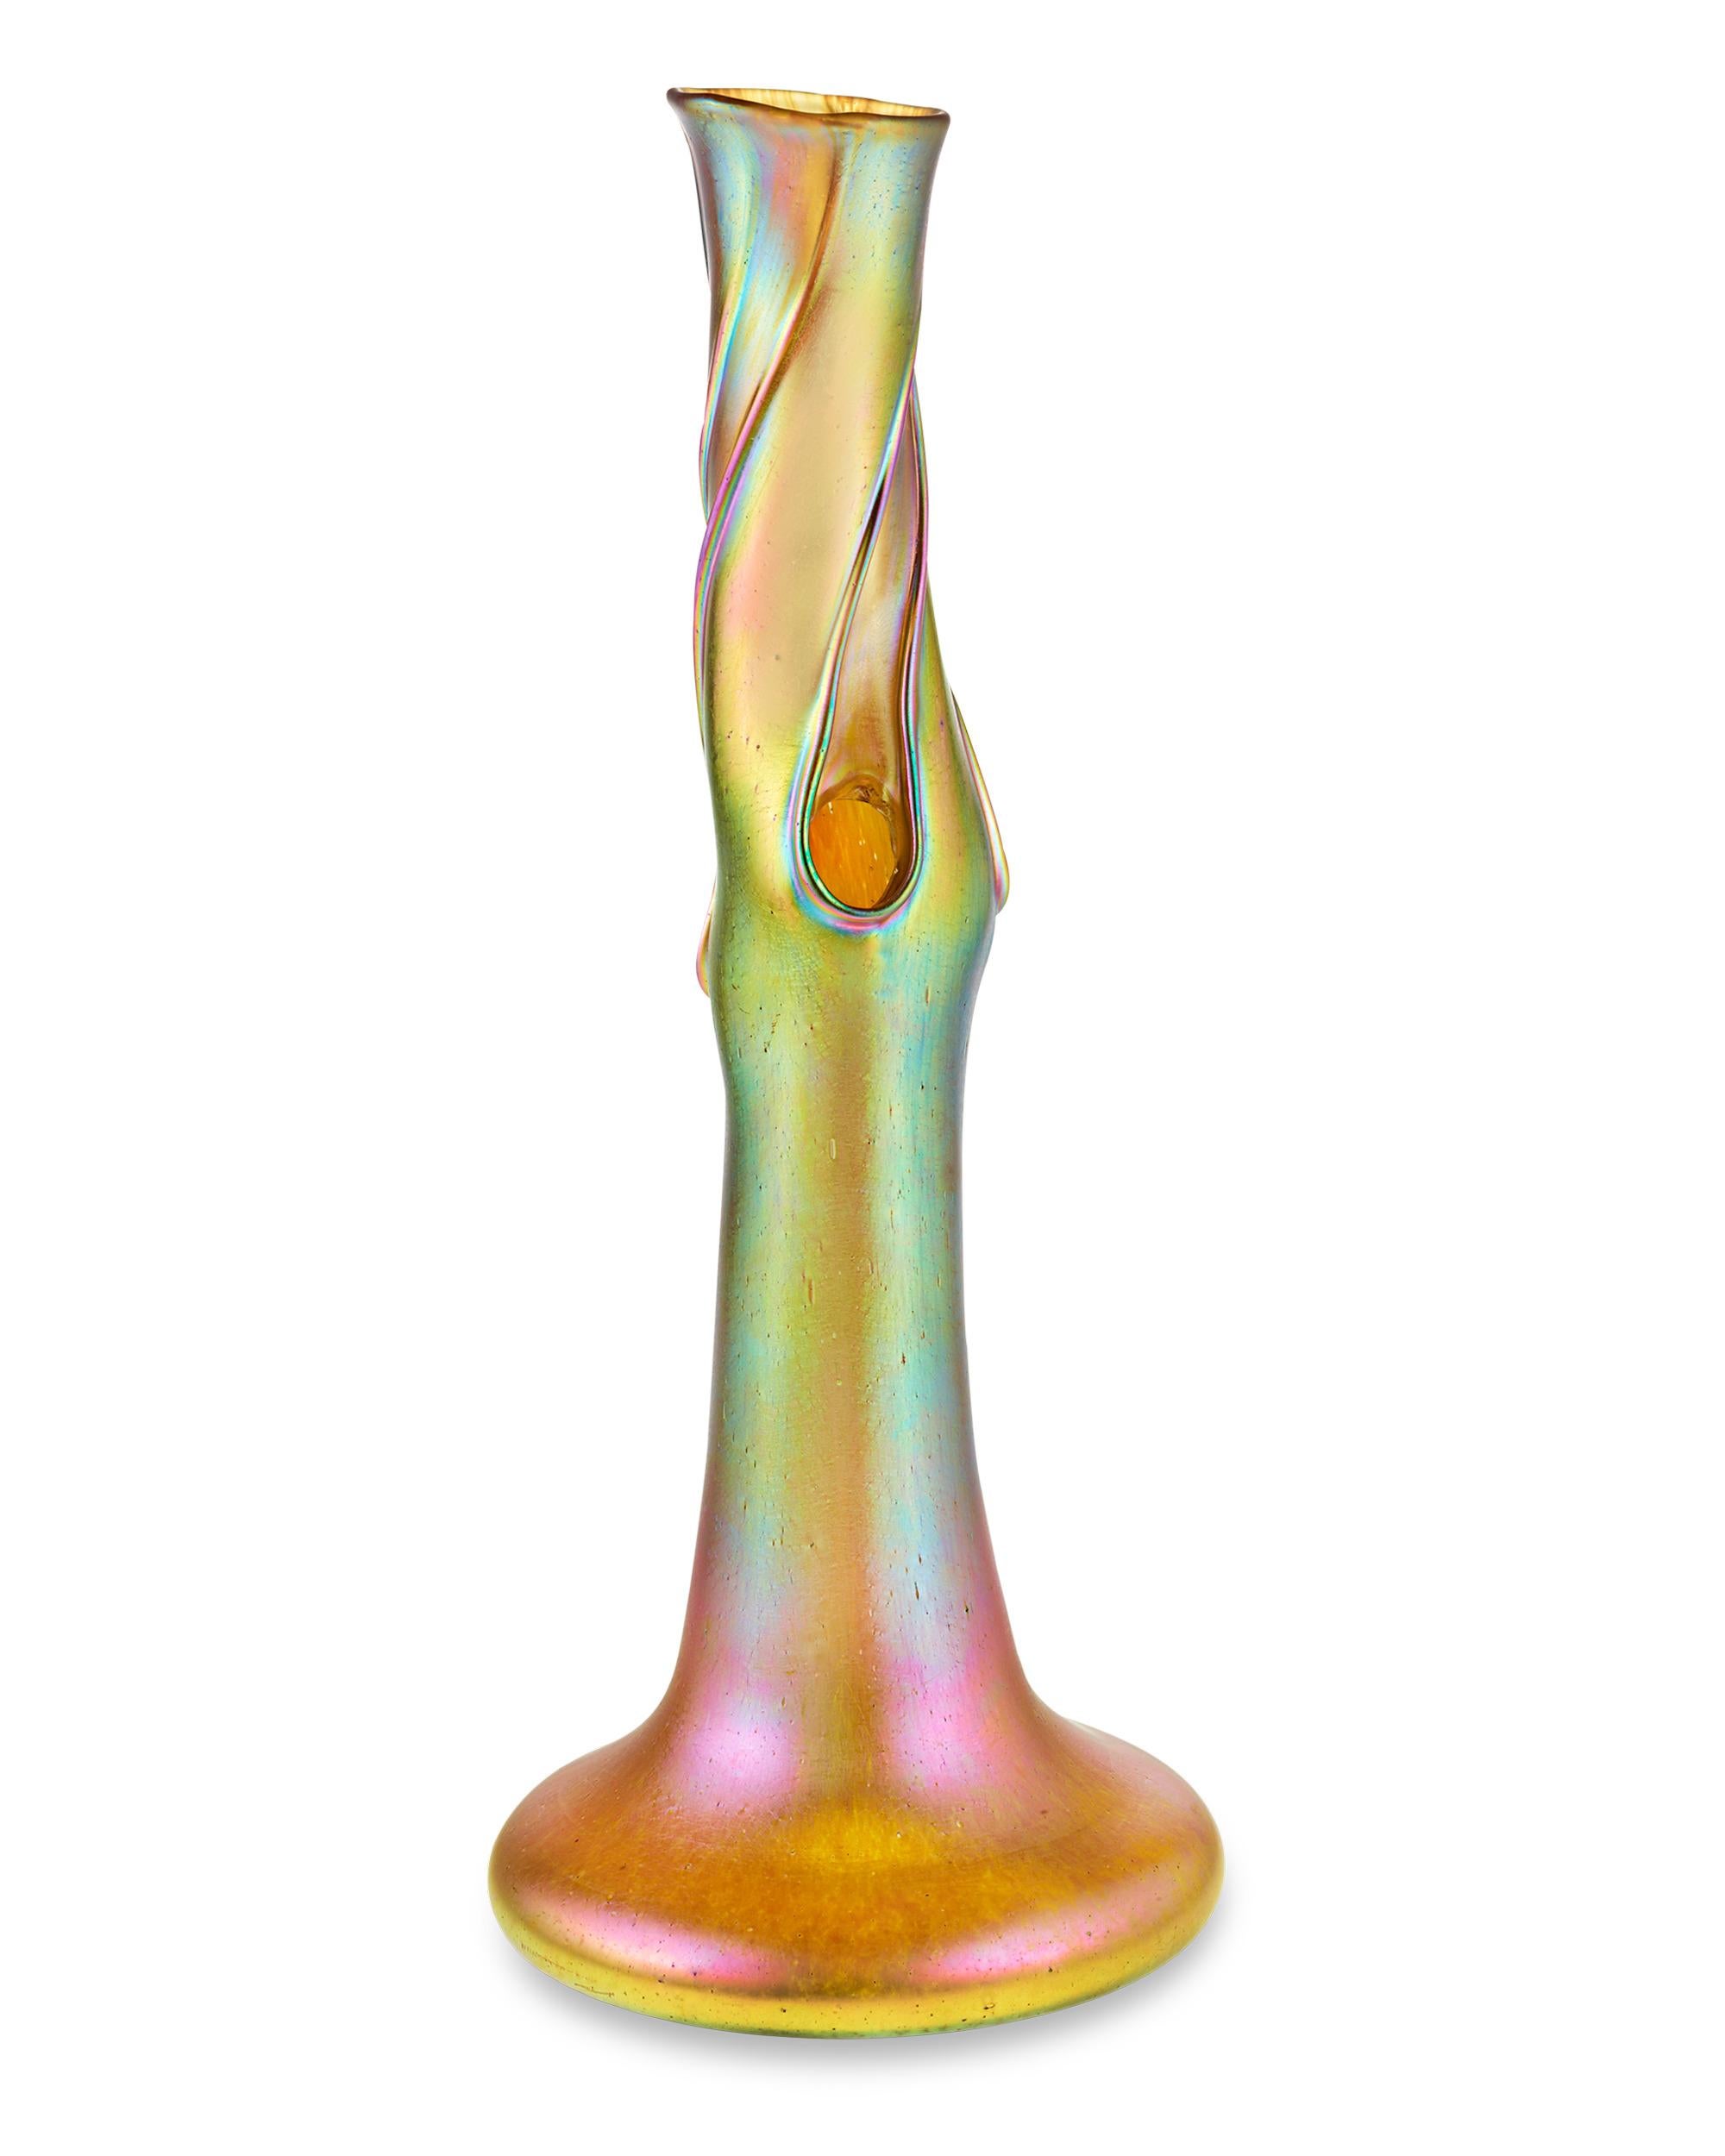 Des tourbillons irisés ornent ce rare vase en forme de tronc d'arbre Candia Silberiris de la célèbre firme de verre d'art Loetz du XIXe siècle. Réalisé dans un design organique et sensuel, avec le lustre caractéristique de Loetz, et mesurant plus de